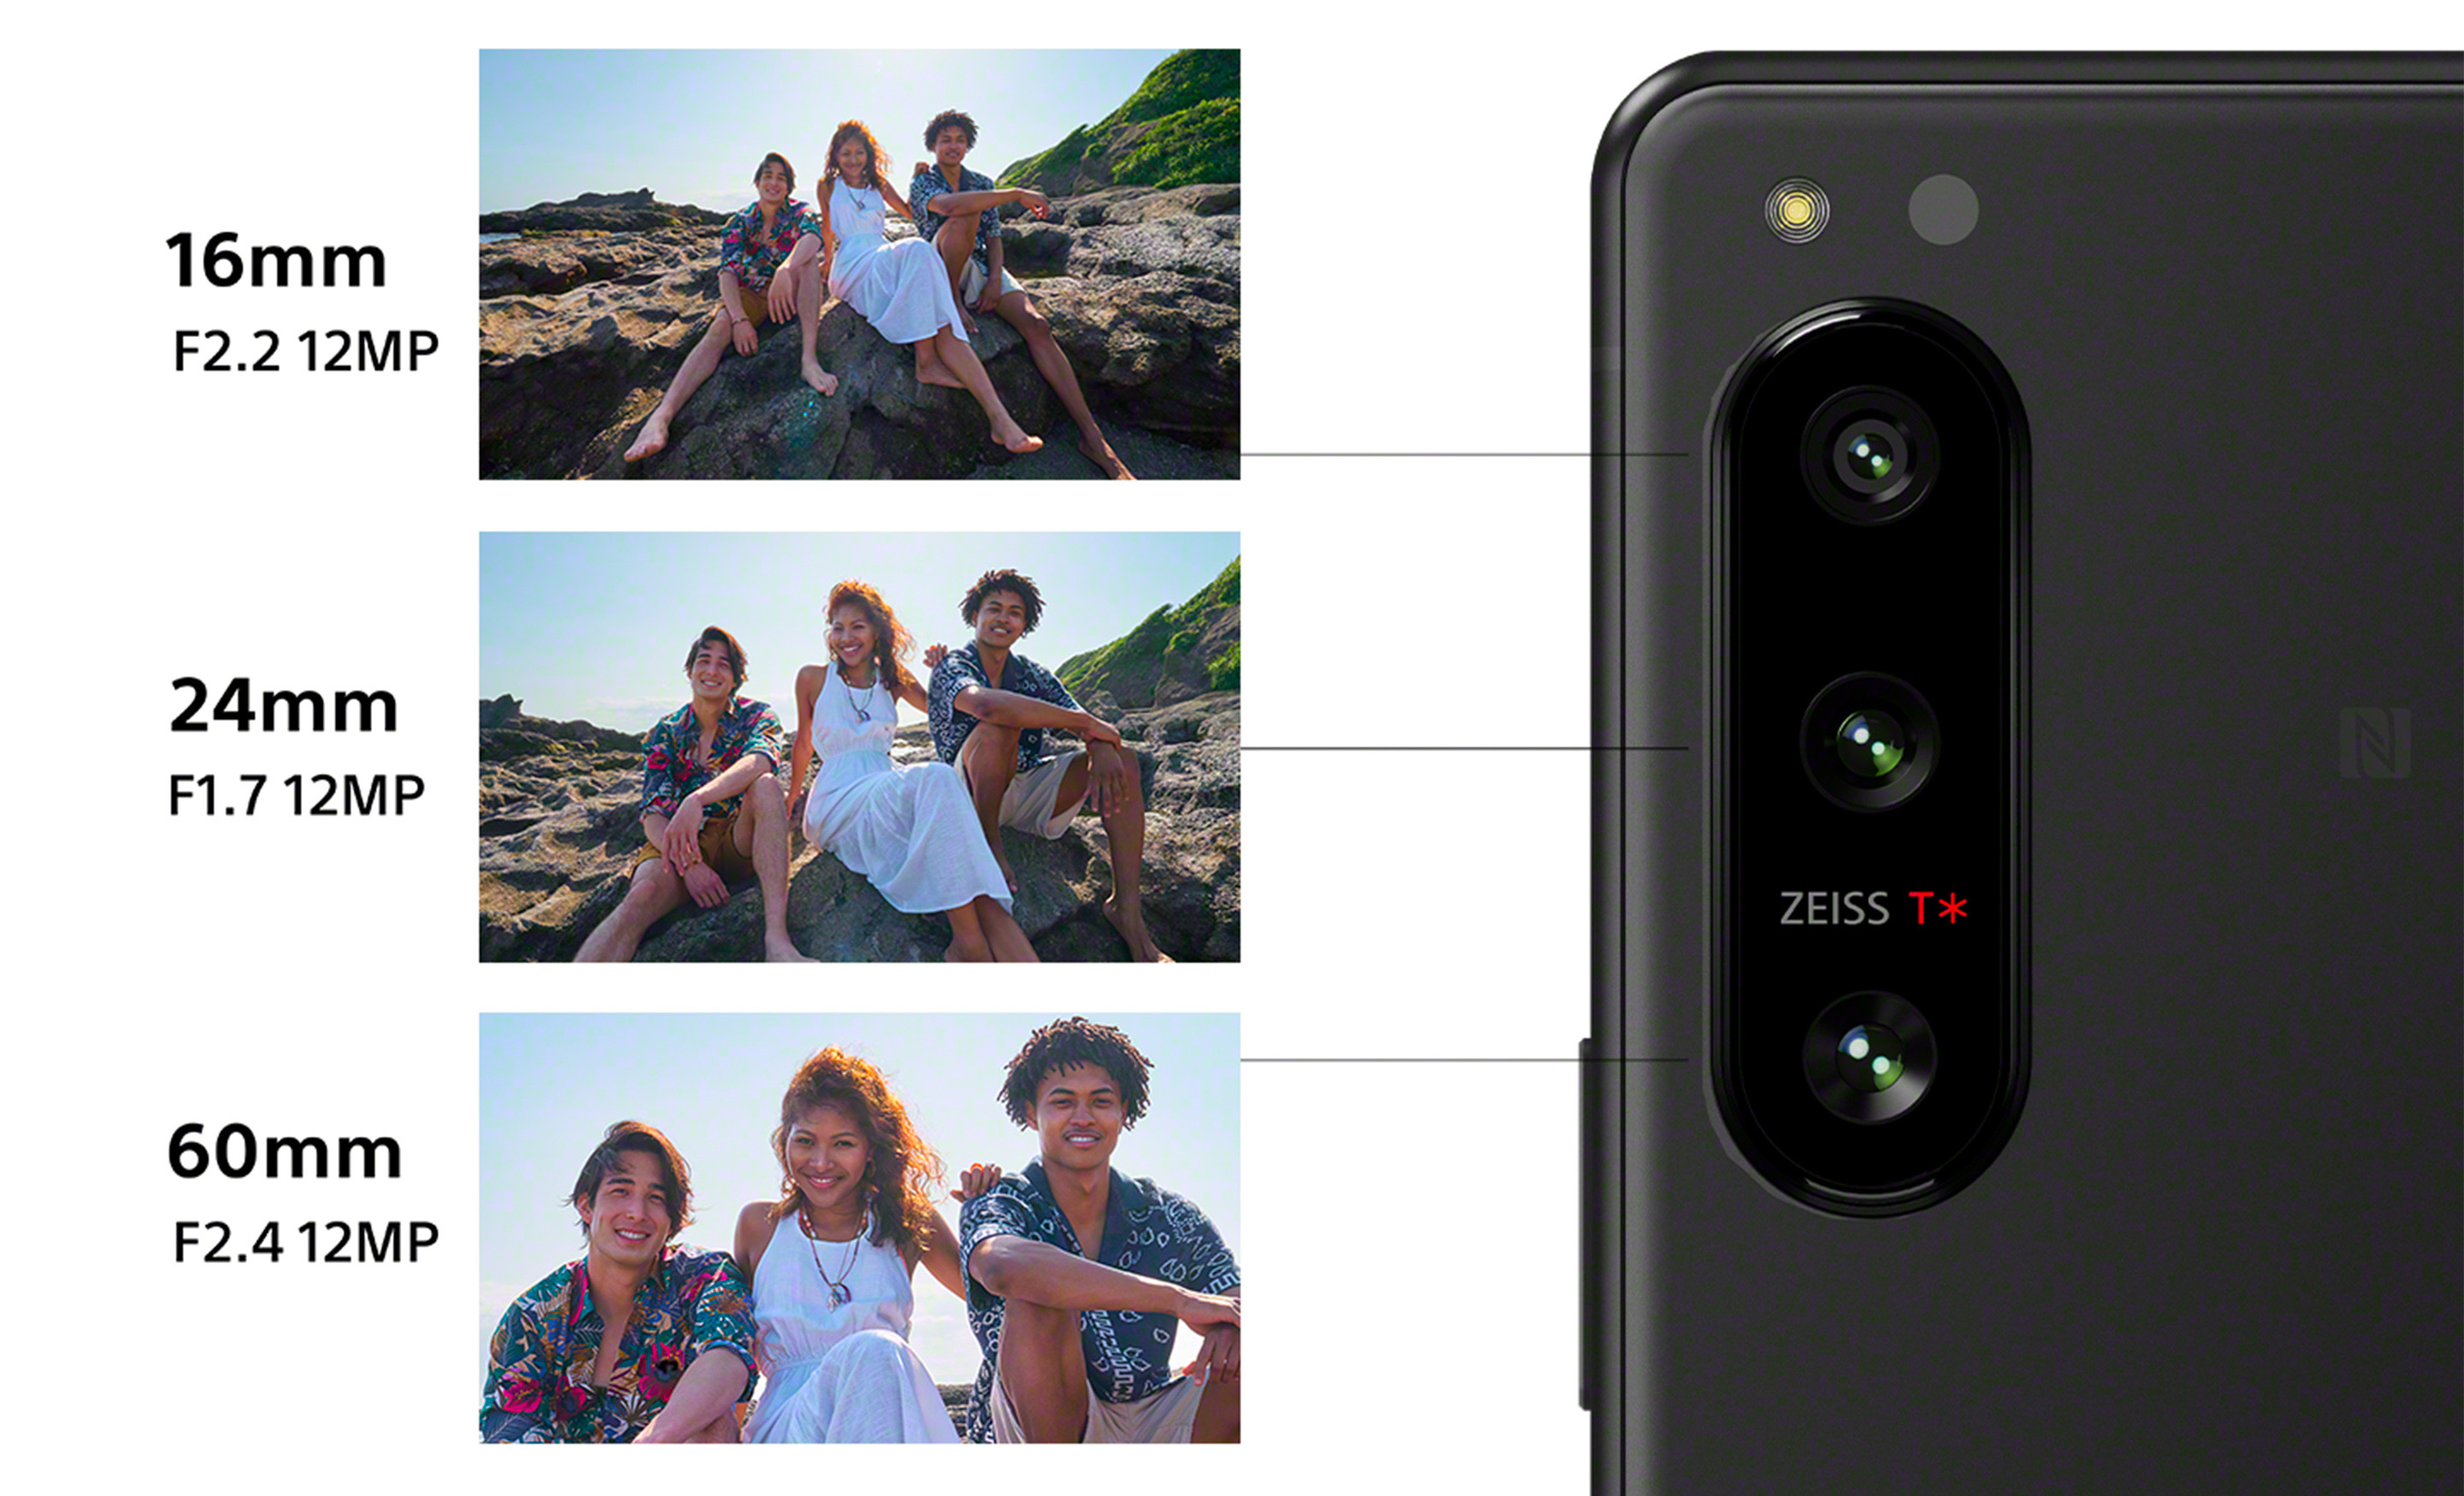 ソニーがXperia 5 IVを発売 - メインカメラ全てに4K/120pを搭載、α